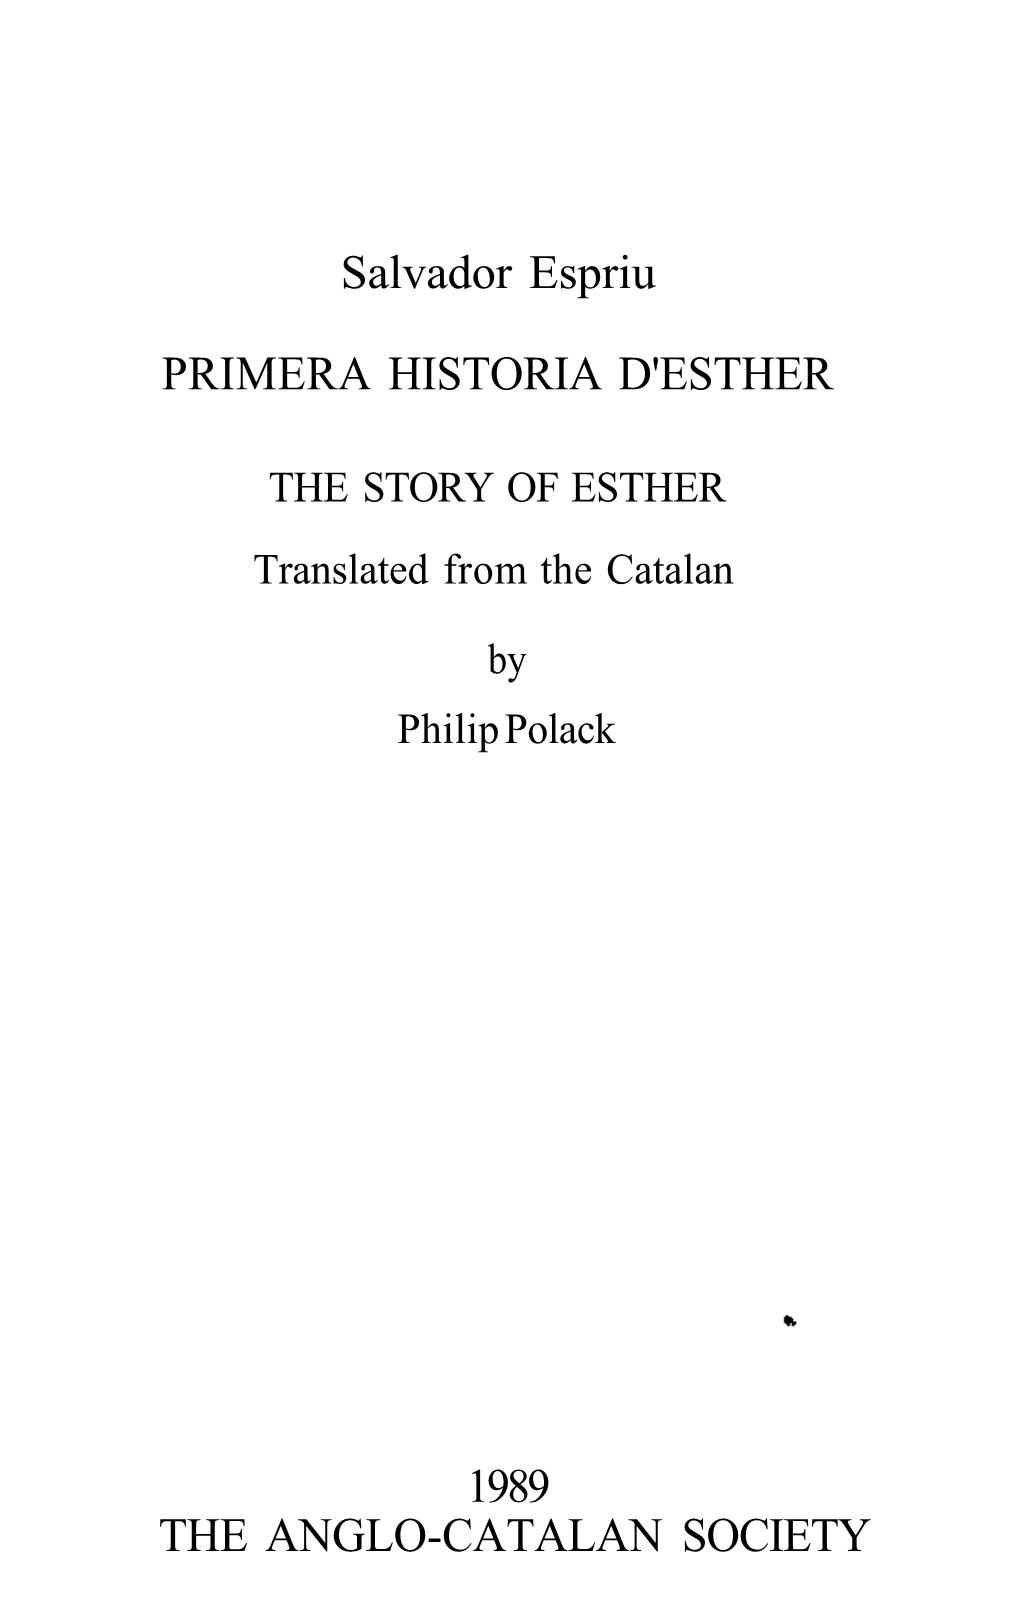 Salvador Espriu PRIMERA HISTORIA D'esther 1989 the ANGLO-CATALAN SOCIETY